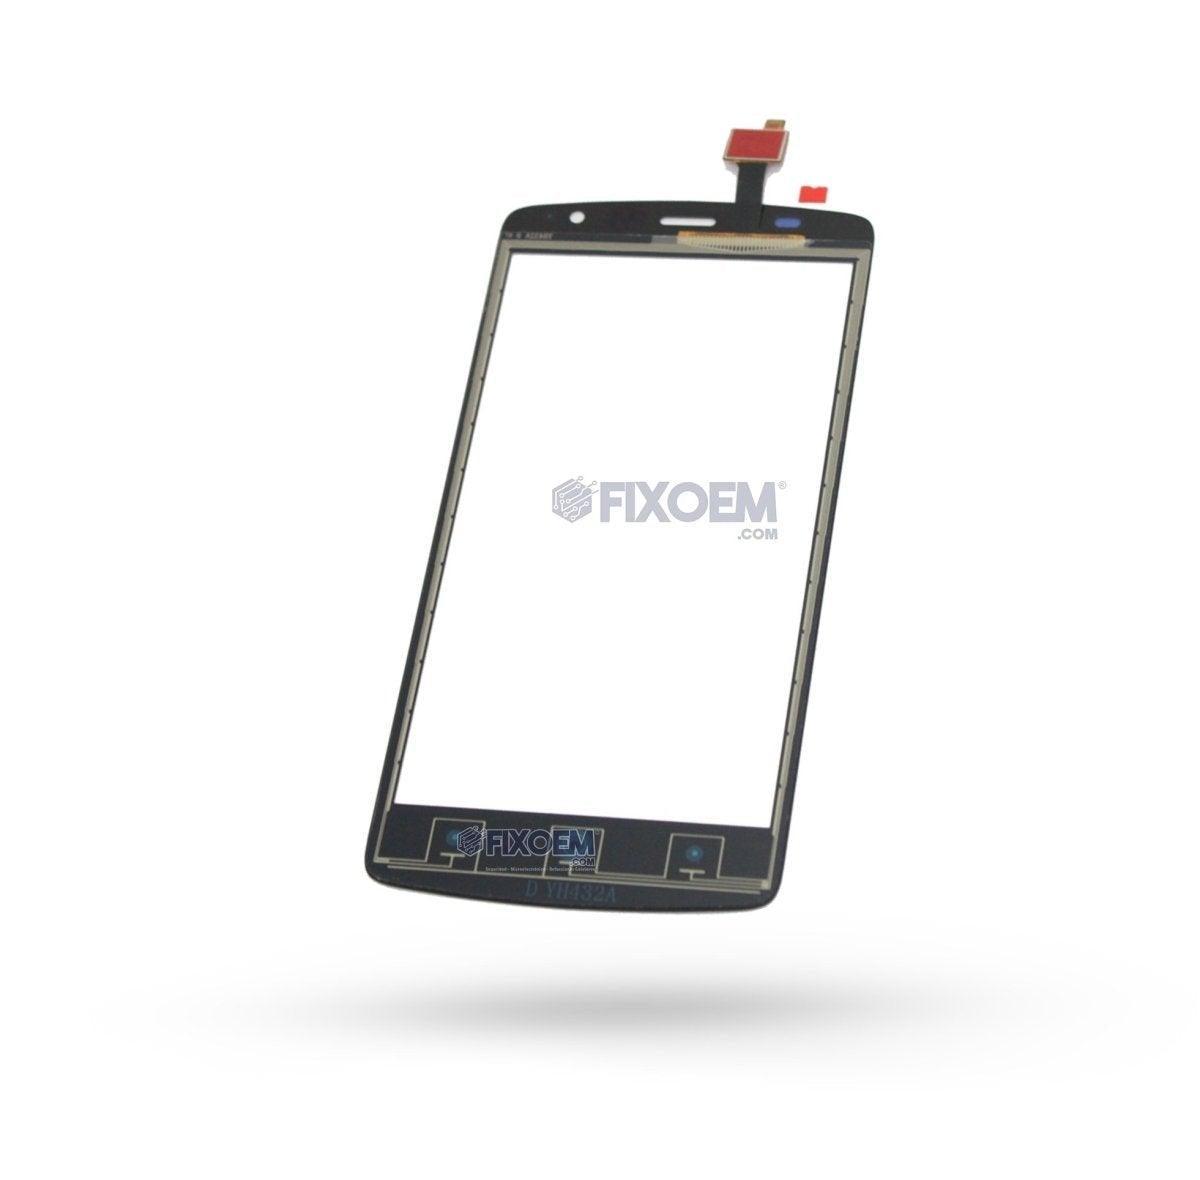 Touch L5 Zte a solo $ 70.00 Refaccion y puestos celulares, refurbish y microelectronica.- FixOEM